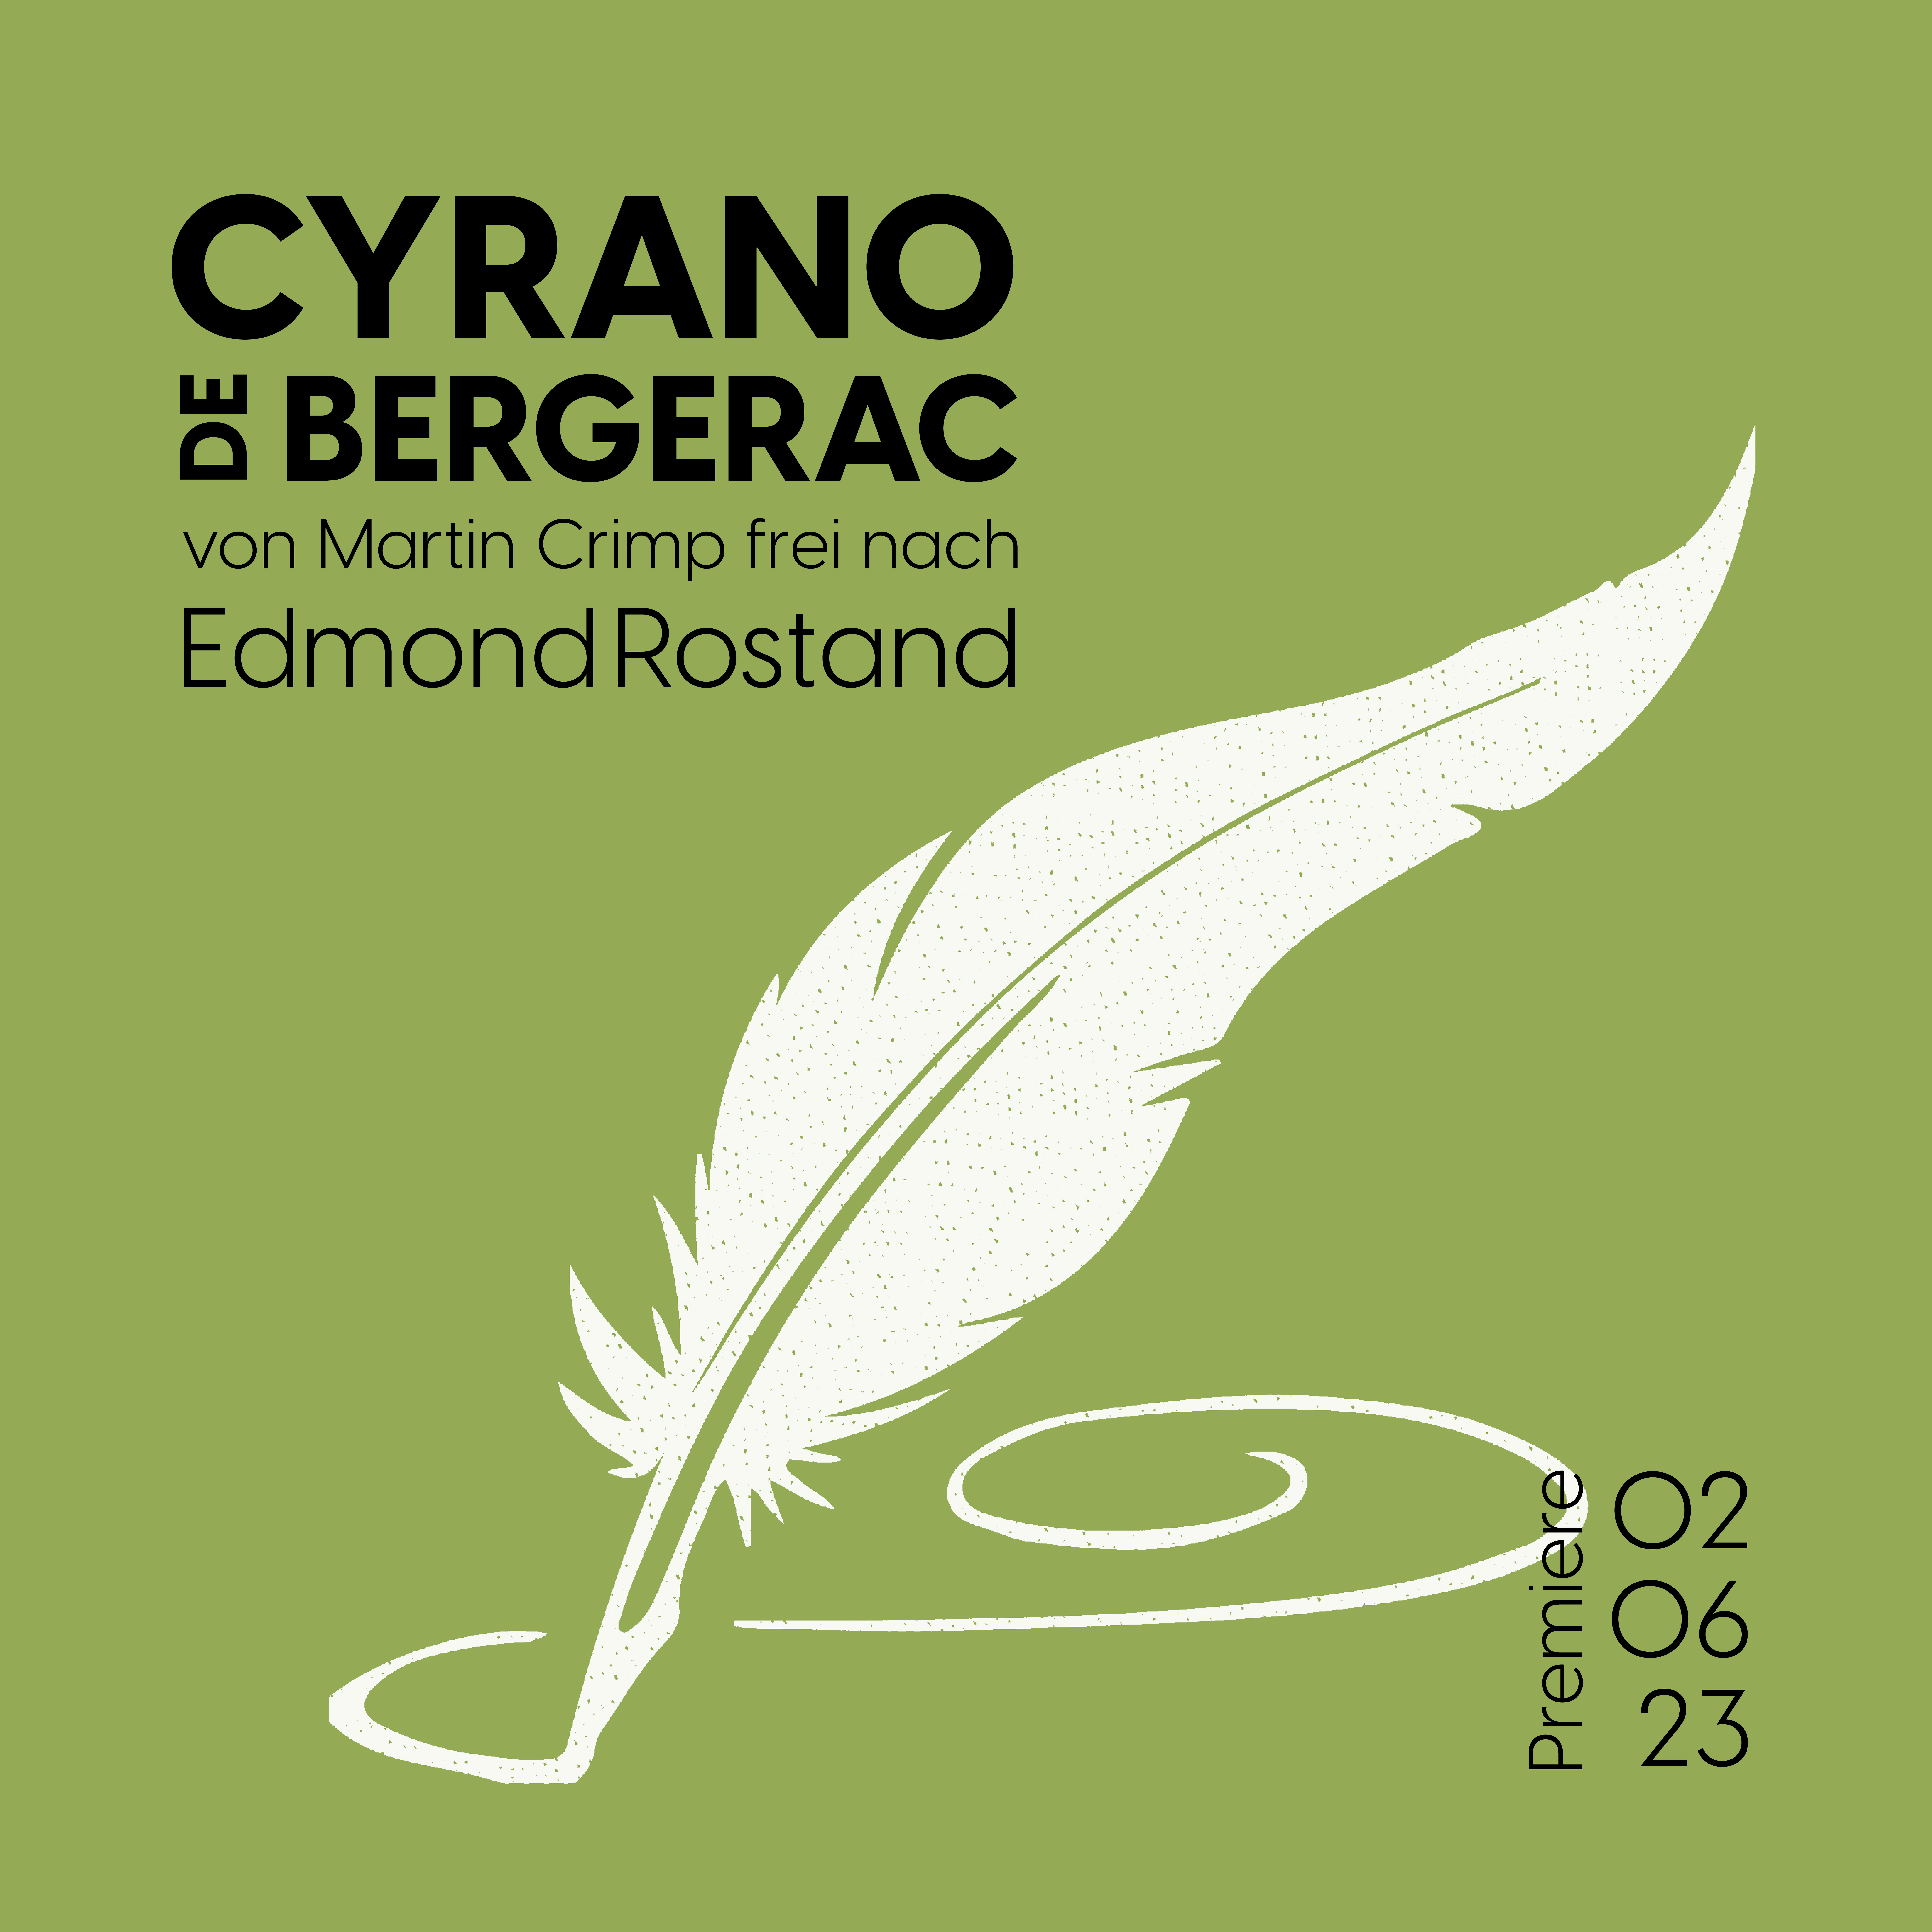 Ankündigungsbild "Cyrano der Bergerac". Schwarze Schrift auf grünem Grund: "Cyrano der Bergerac von Martin Crimp frei nach Edmond Rostand", "Premiere: 06.05.23". Weiße Feder.